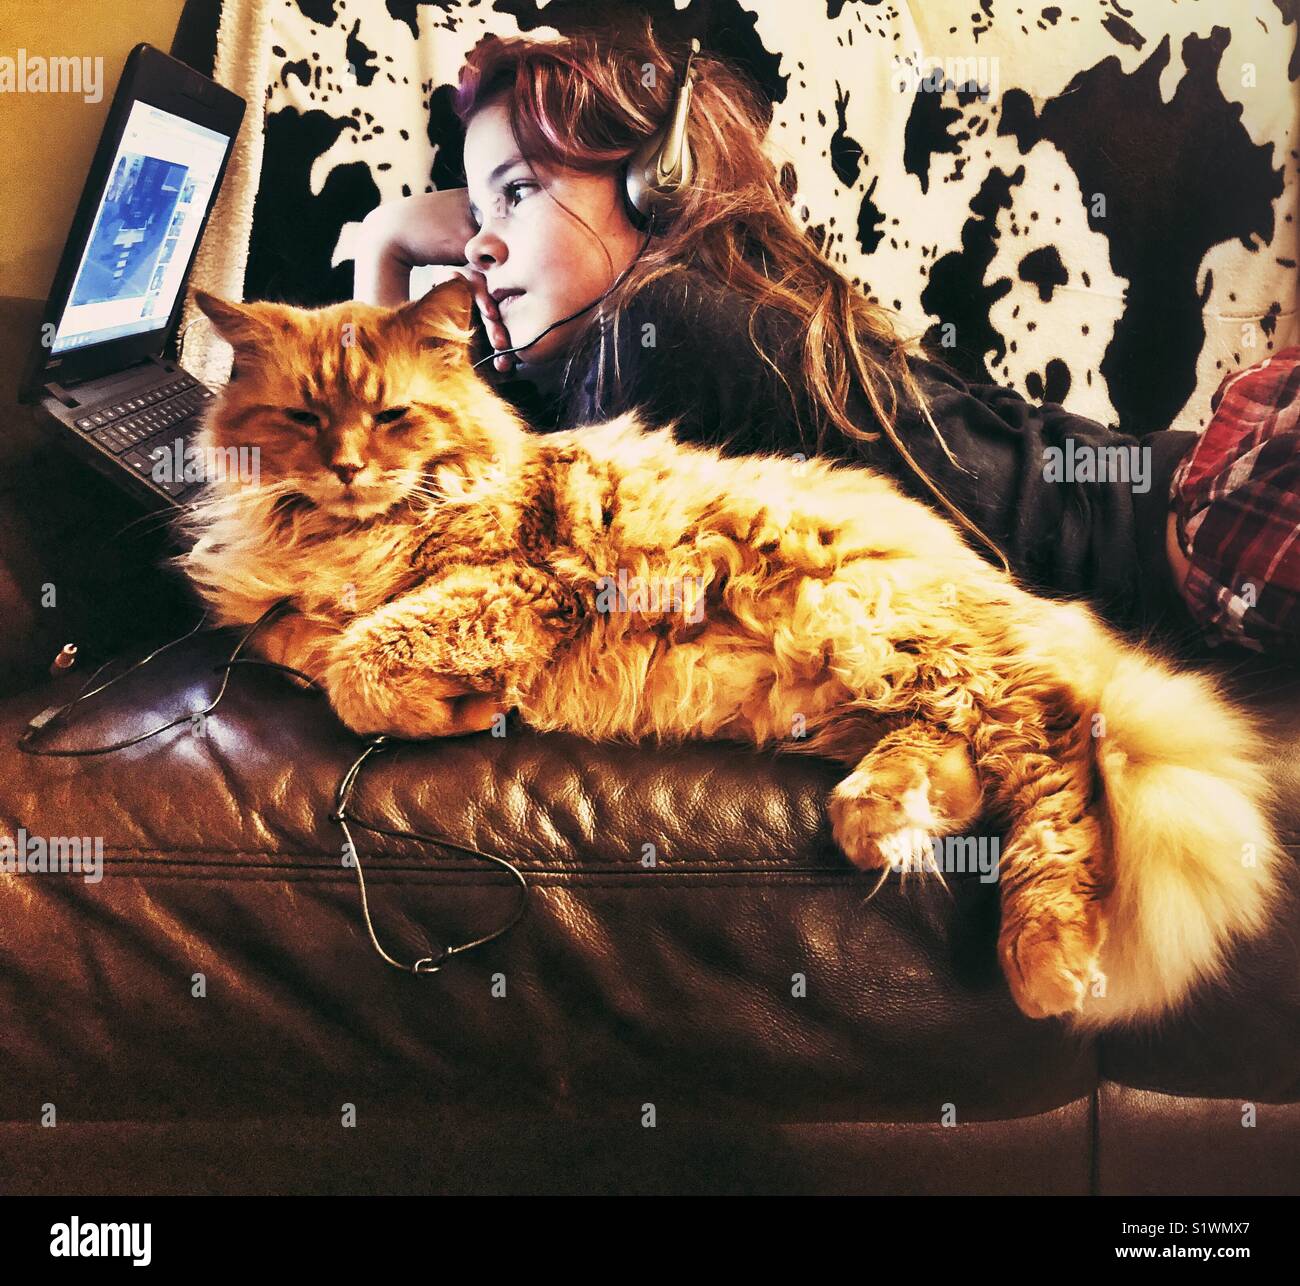 Girl Videos auf Laptop mit großen orange Katze neben ihr auf einem Ledersofa Stockfoto